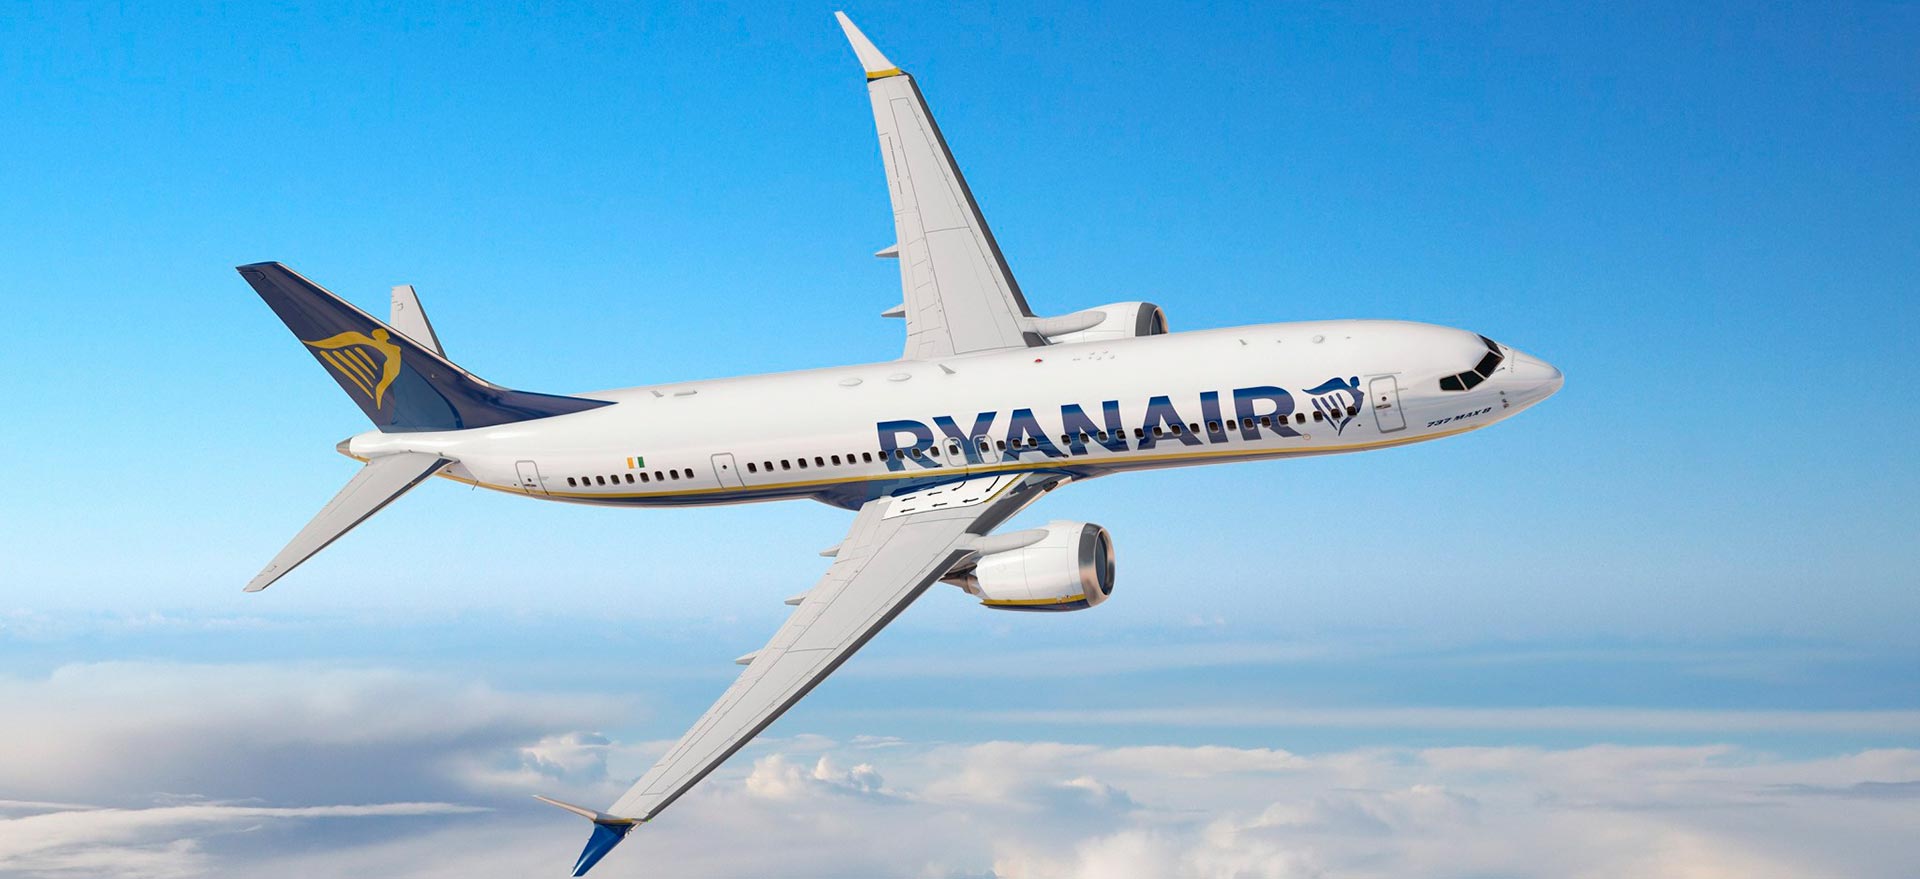 Ryanair-ek Boeing 737 Max izena 737-8200-ra aldatu zuen. Zer kontatzen da ez dugula lortzen?